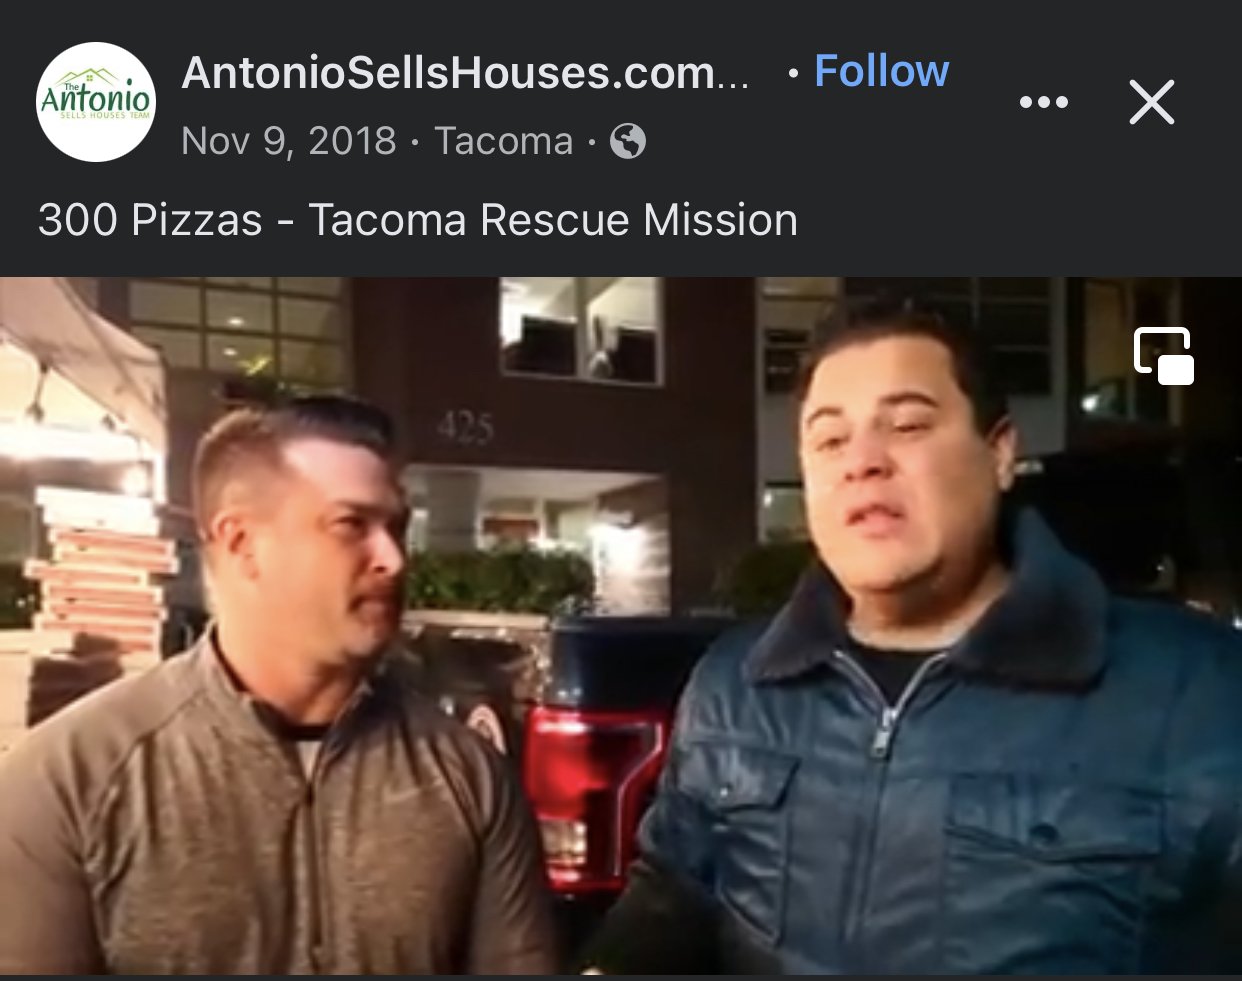 Fat Zach's Pizza - Tacoma Rescue Mission